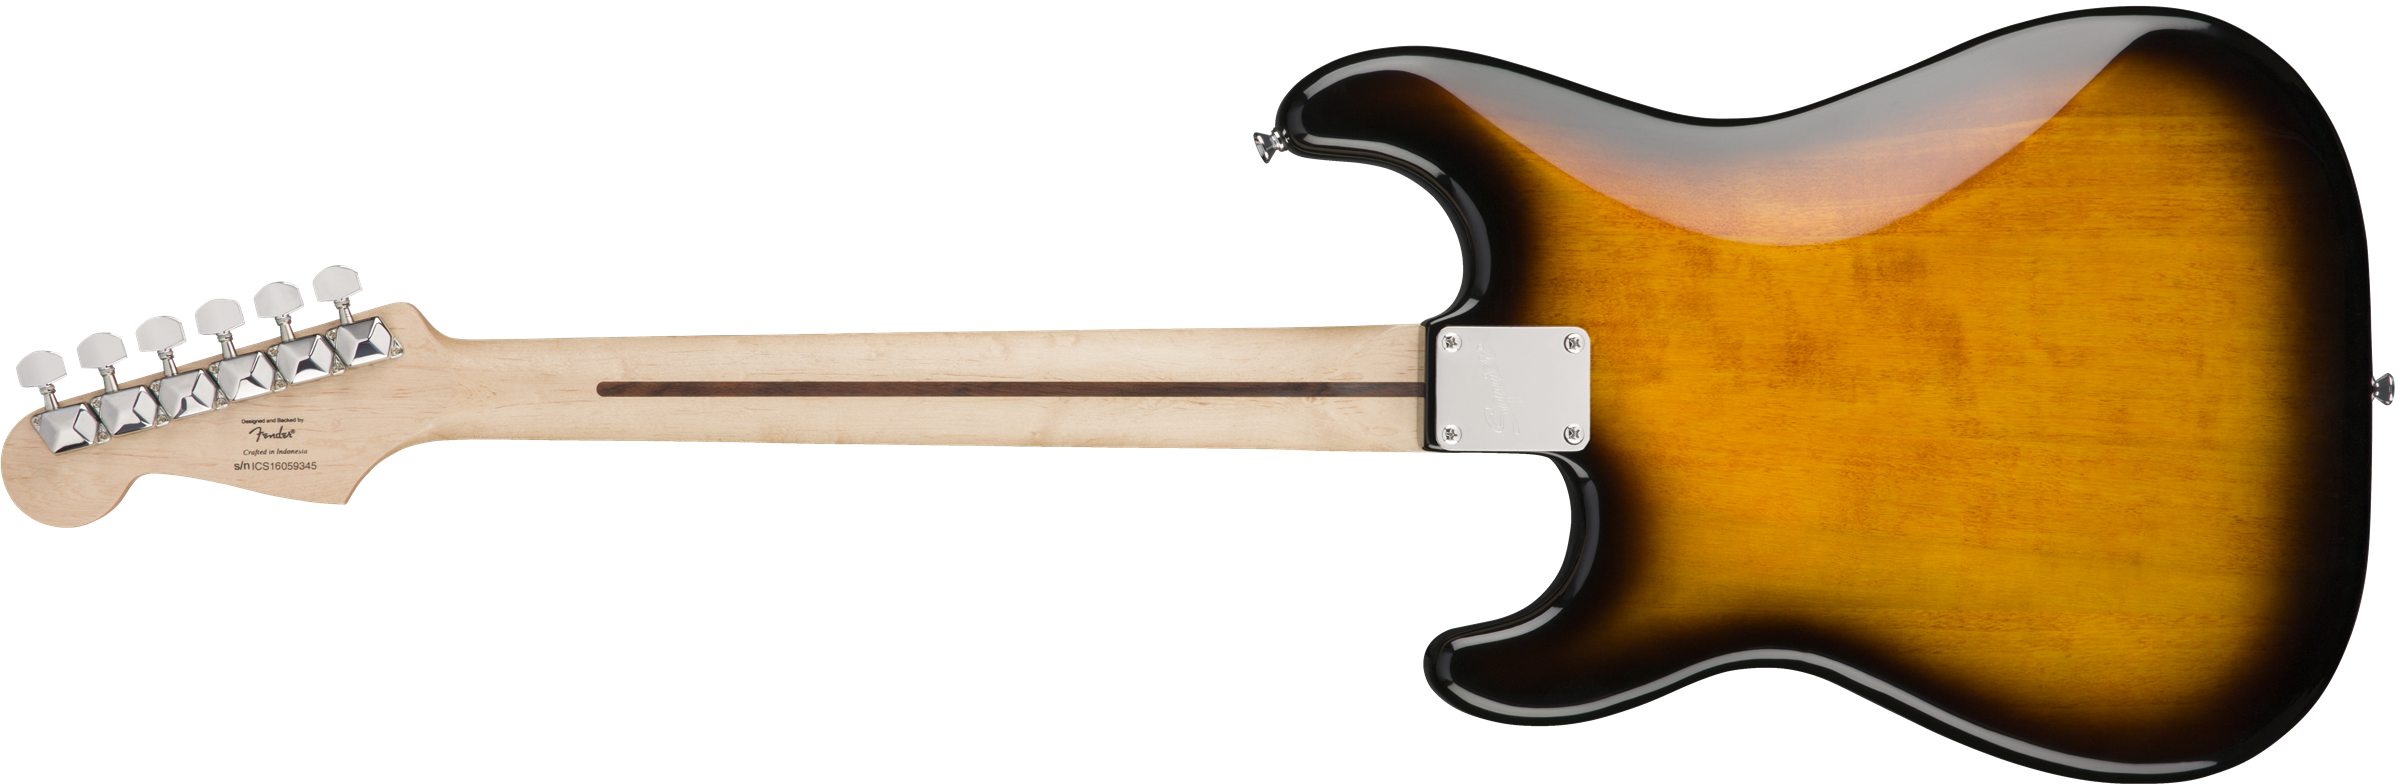 Squier Bullet Stratocaster Ht Sss Lau - Brown Sunburst - E-Gitarre in Str-Form - Variation 1